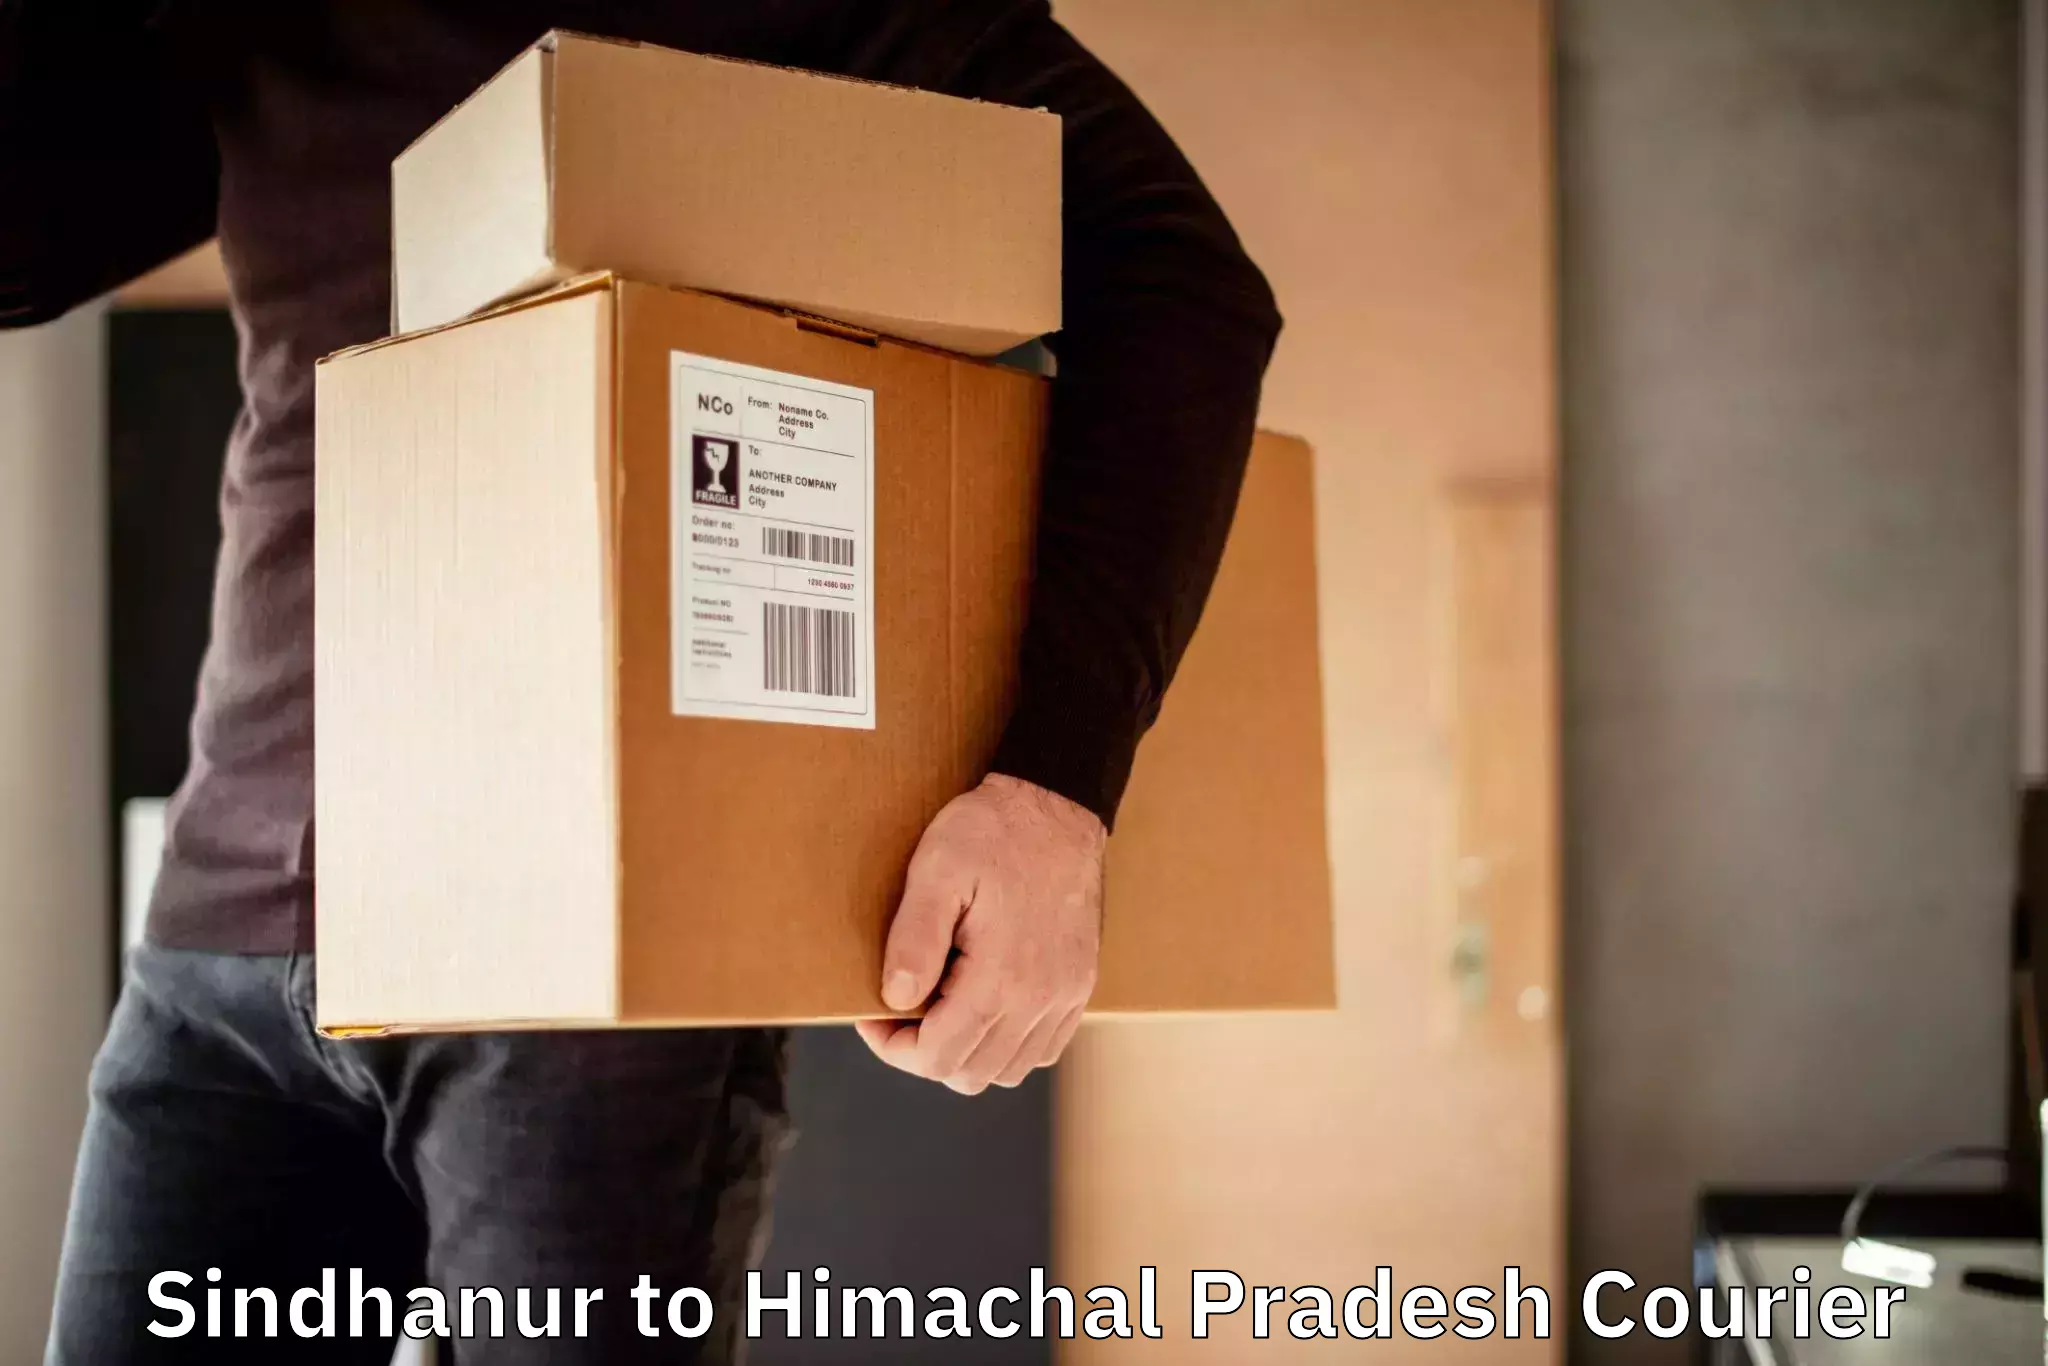 Cost-effective courier options Sindhanur to IIIT Una